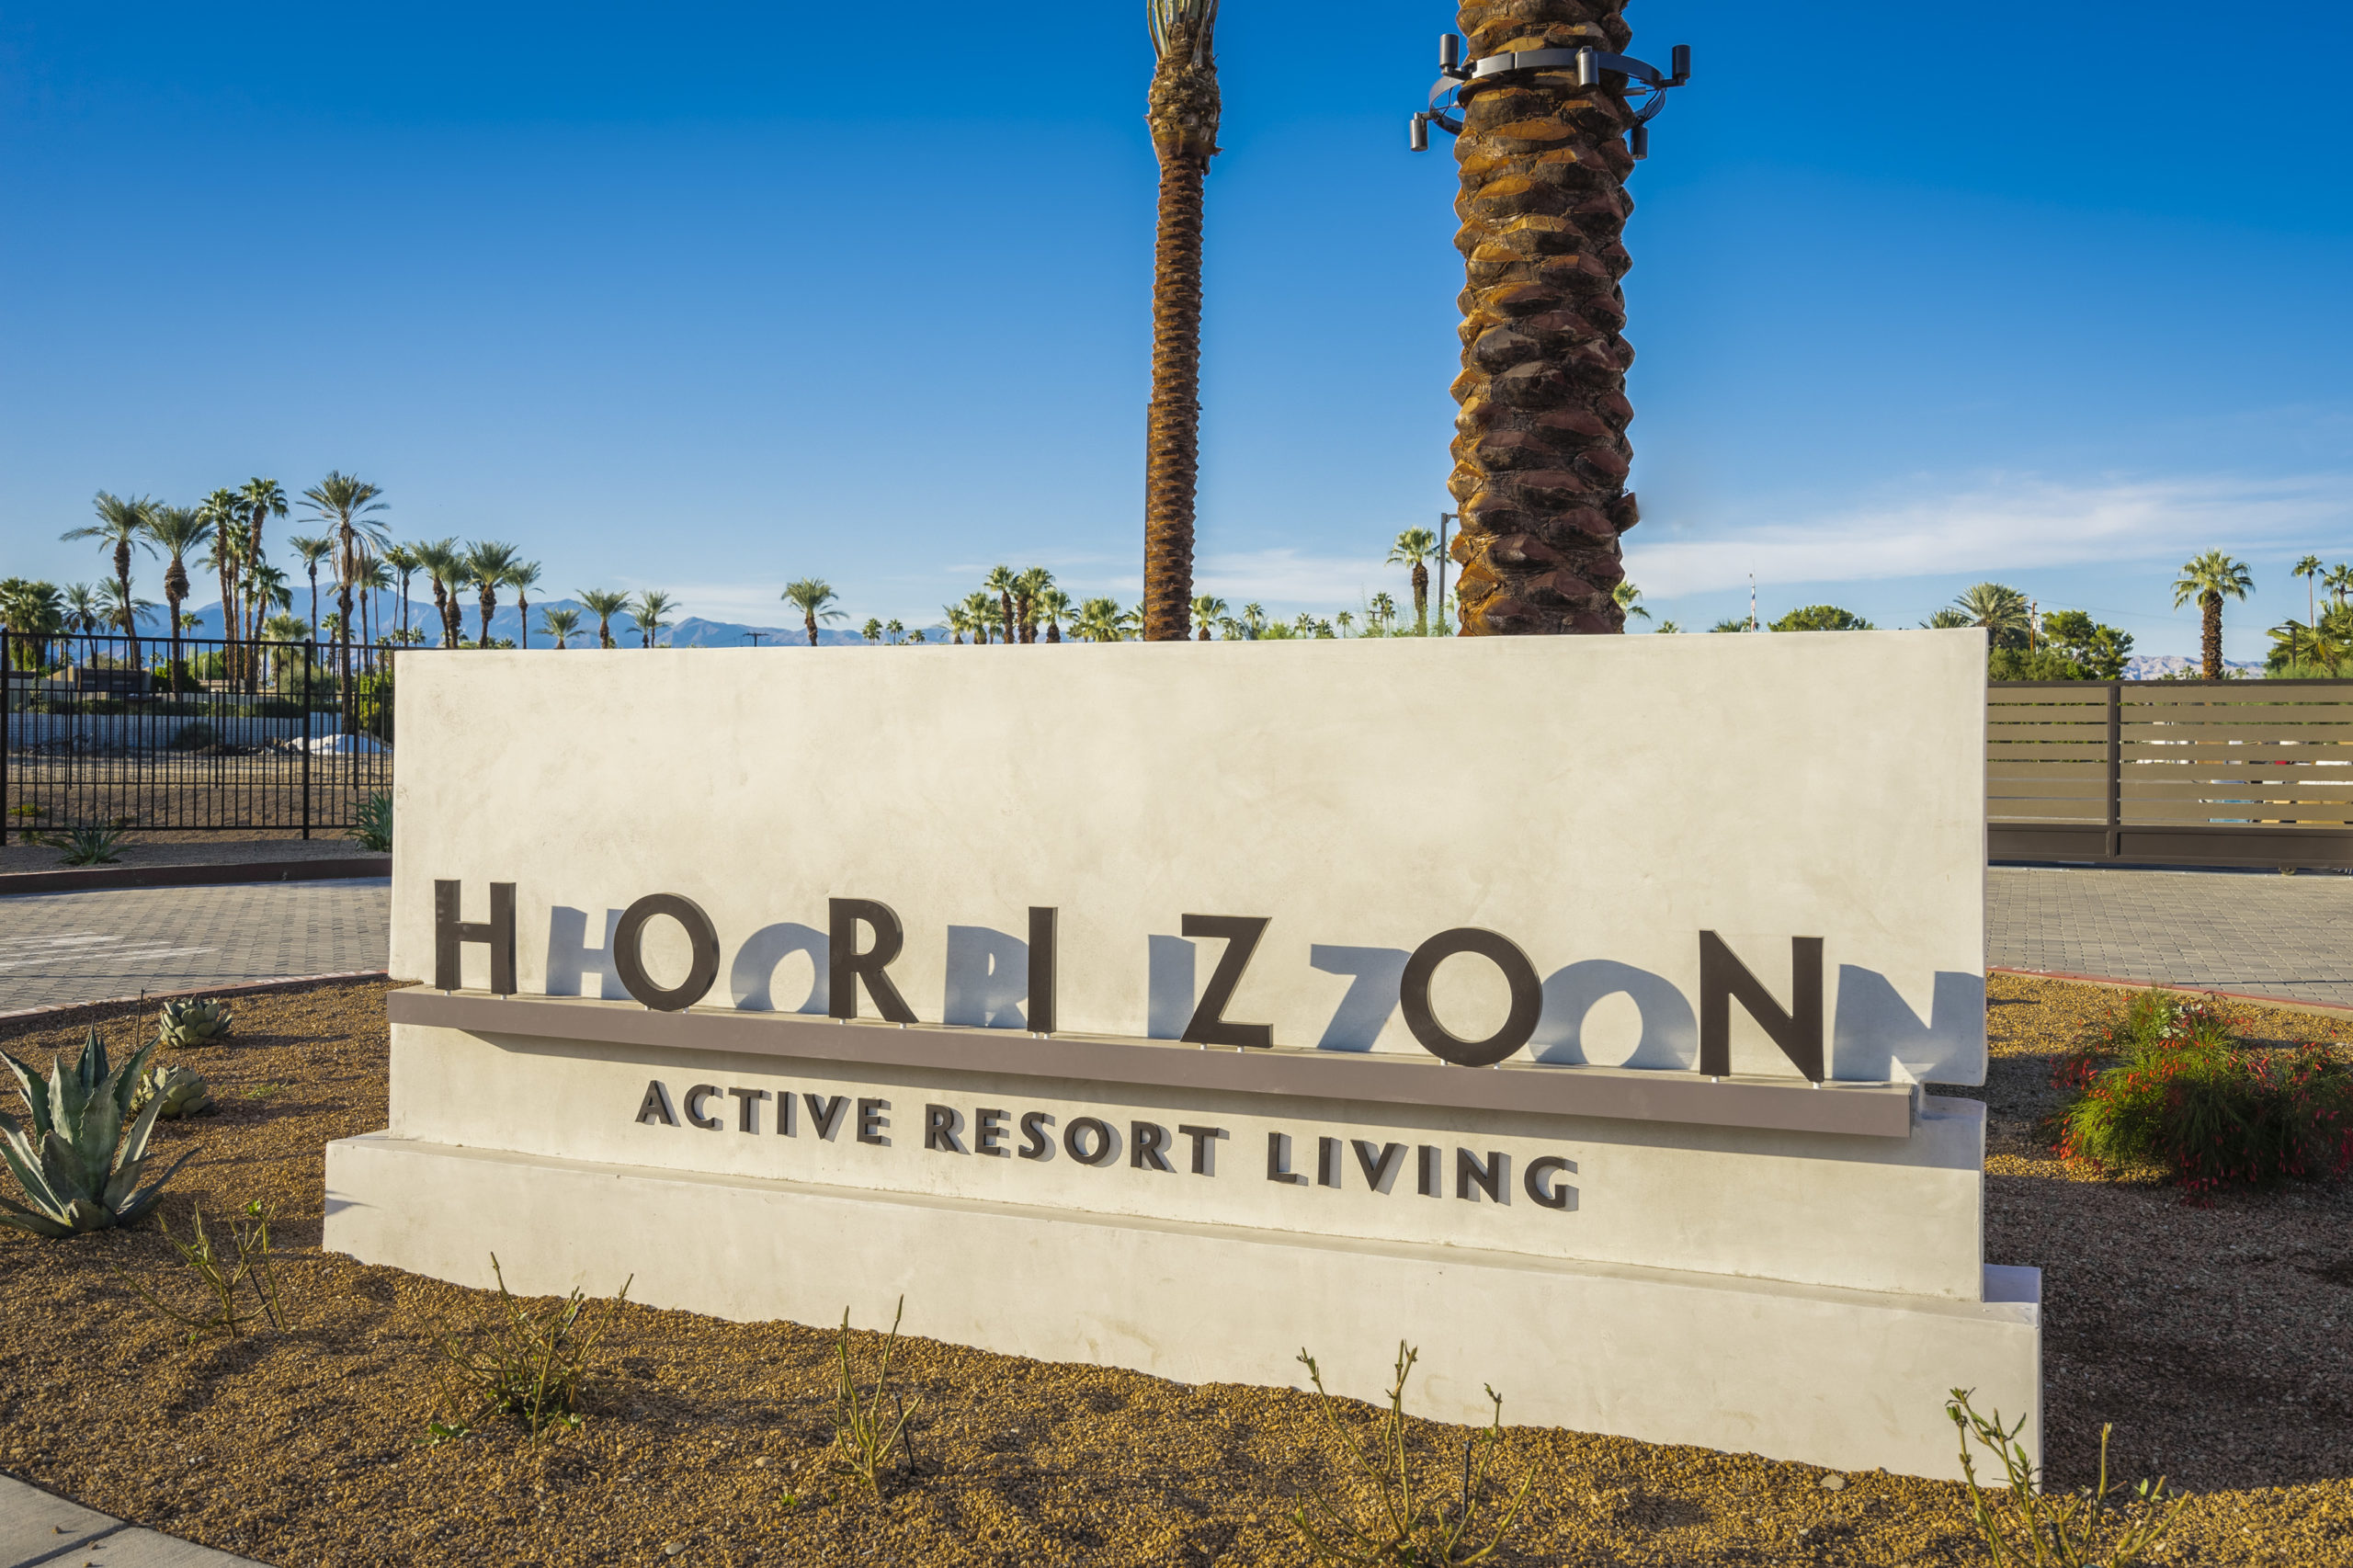 Horizon resort entry signage